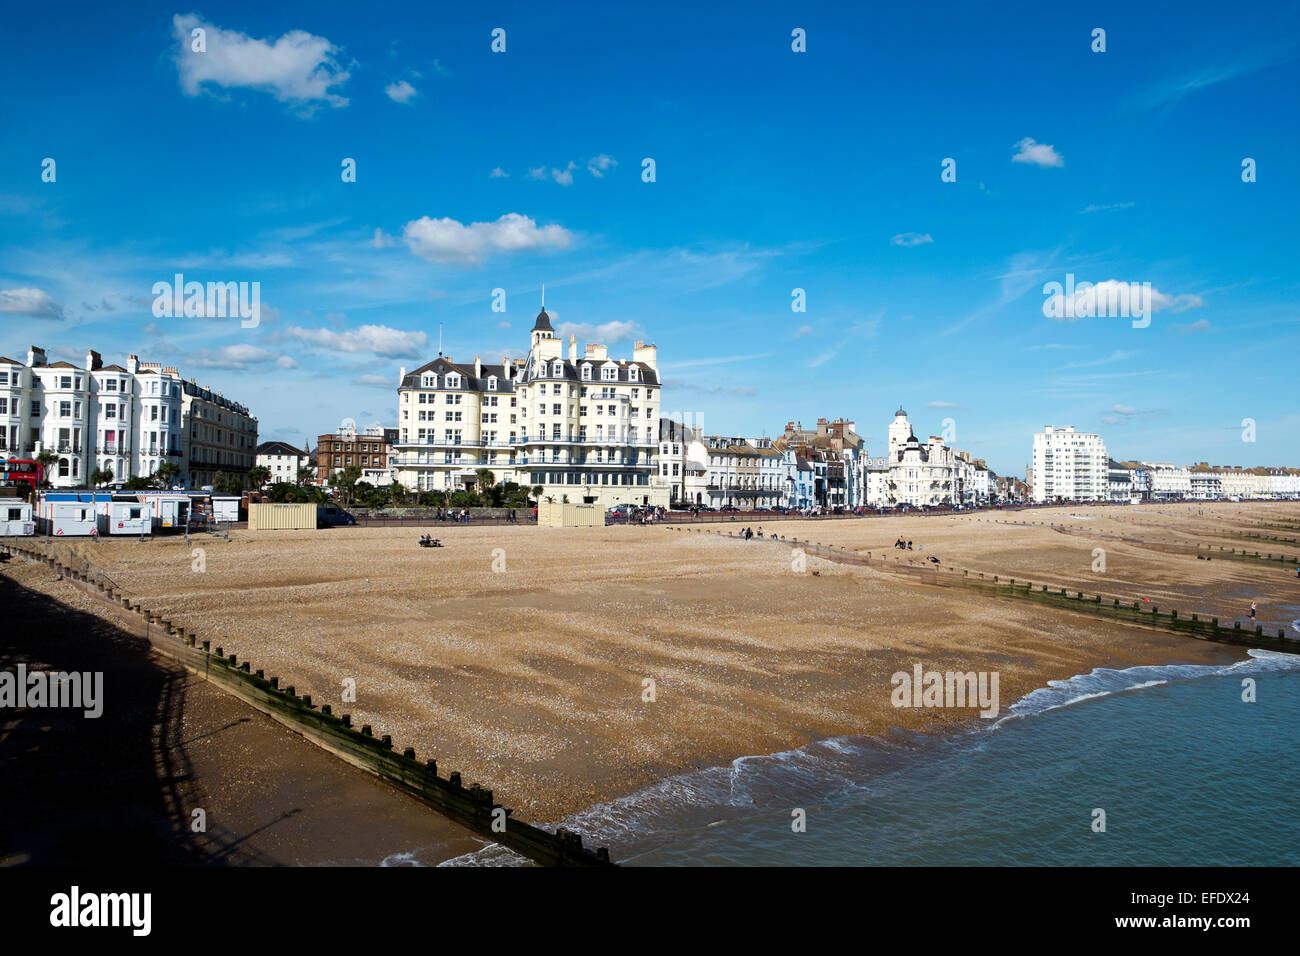 Una vista de Eastbourne Pier de la playa de guijarros y edificios costeros. Foto de stock